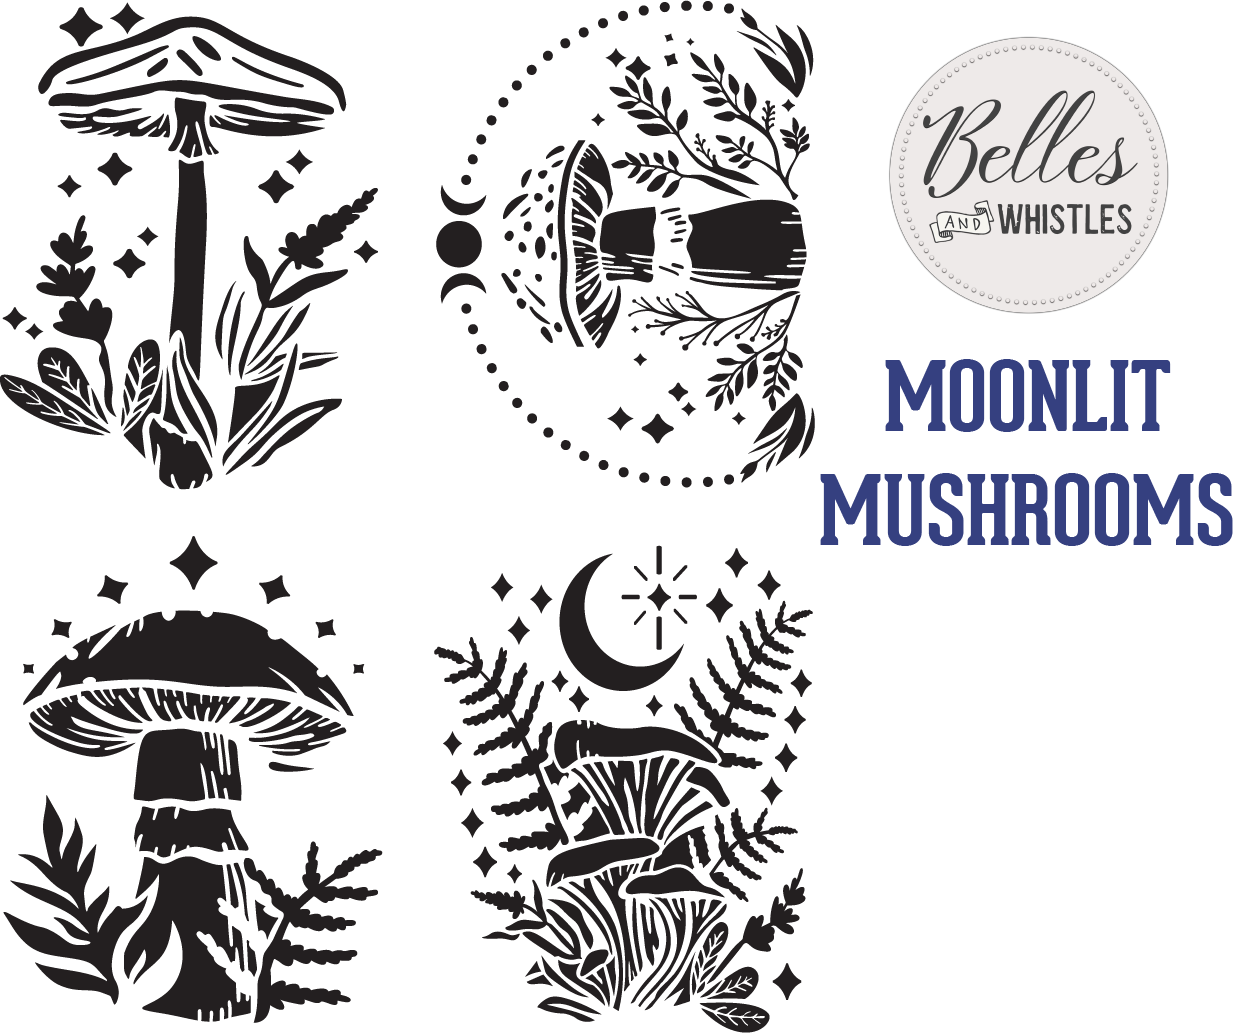 Belles and Whistles - Moonlit Mushrooms